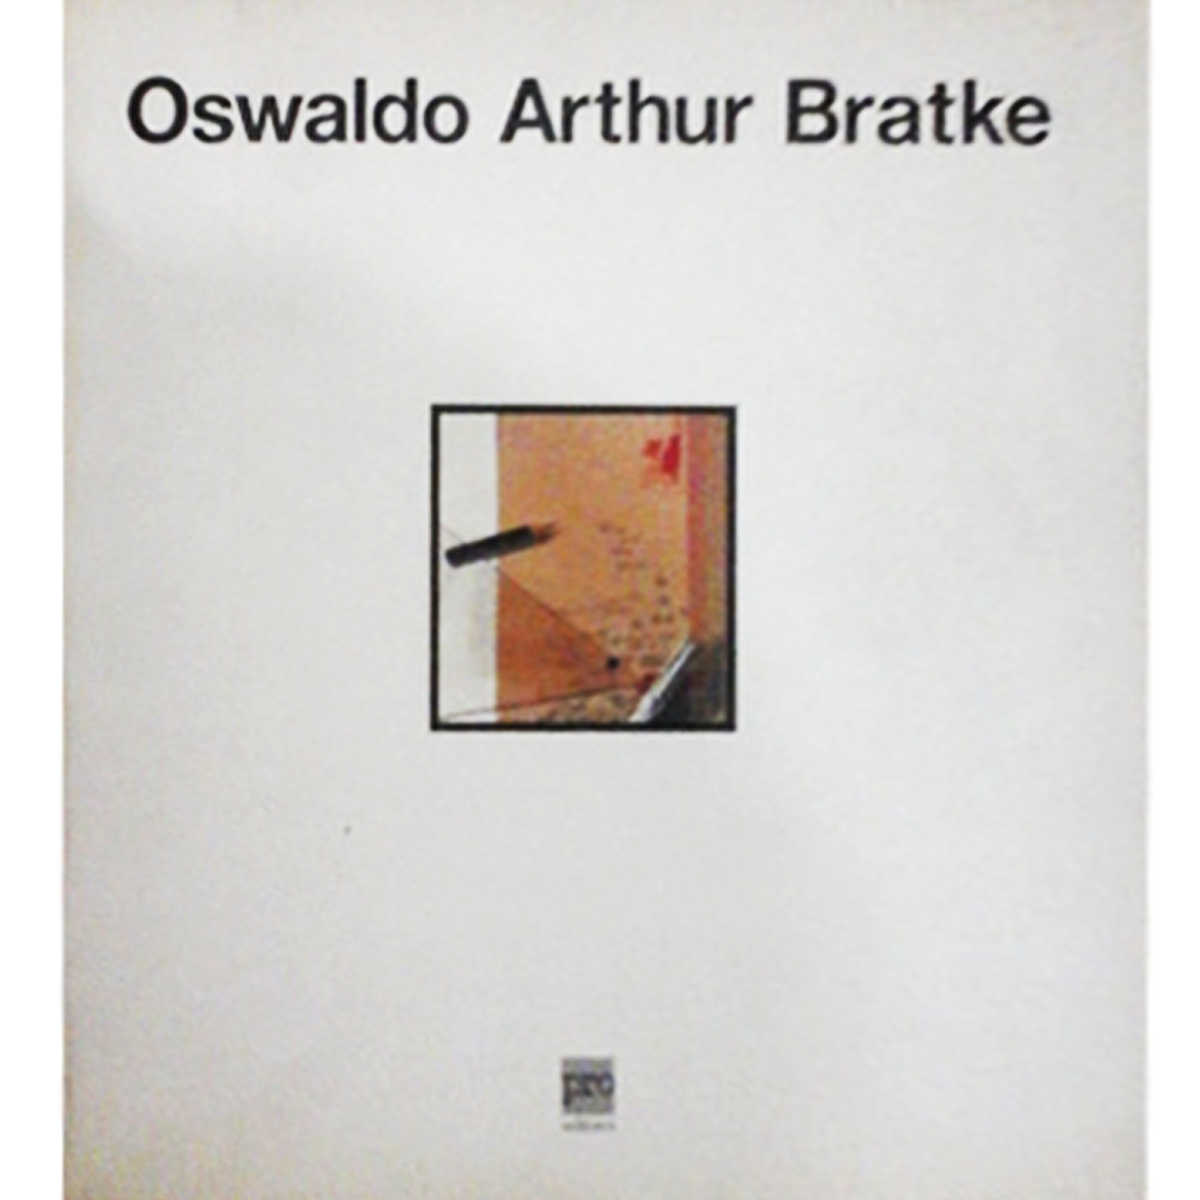 Oswaldo Arthur Bratke